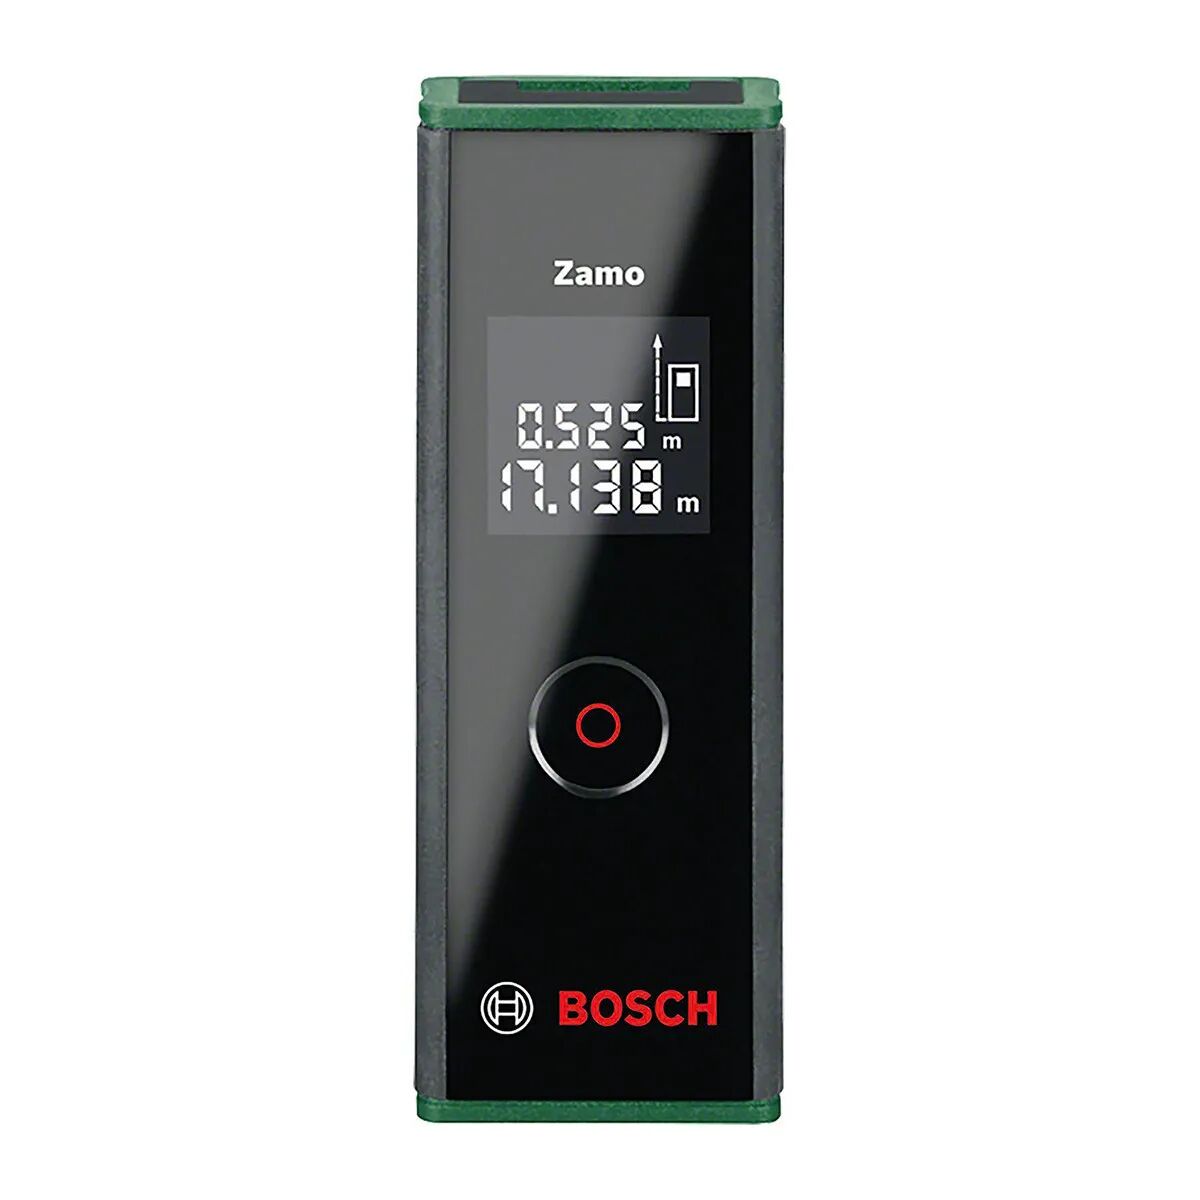 Bosch Misuratore Laser  Zamo Iii Fino 20m Misurazione In Continuo Diodo Laser 635 N/m